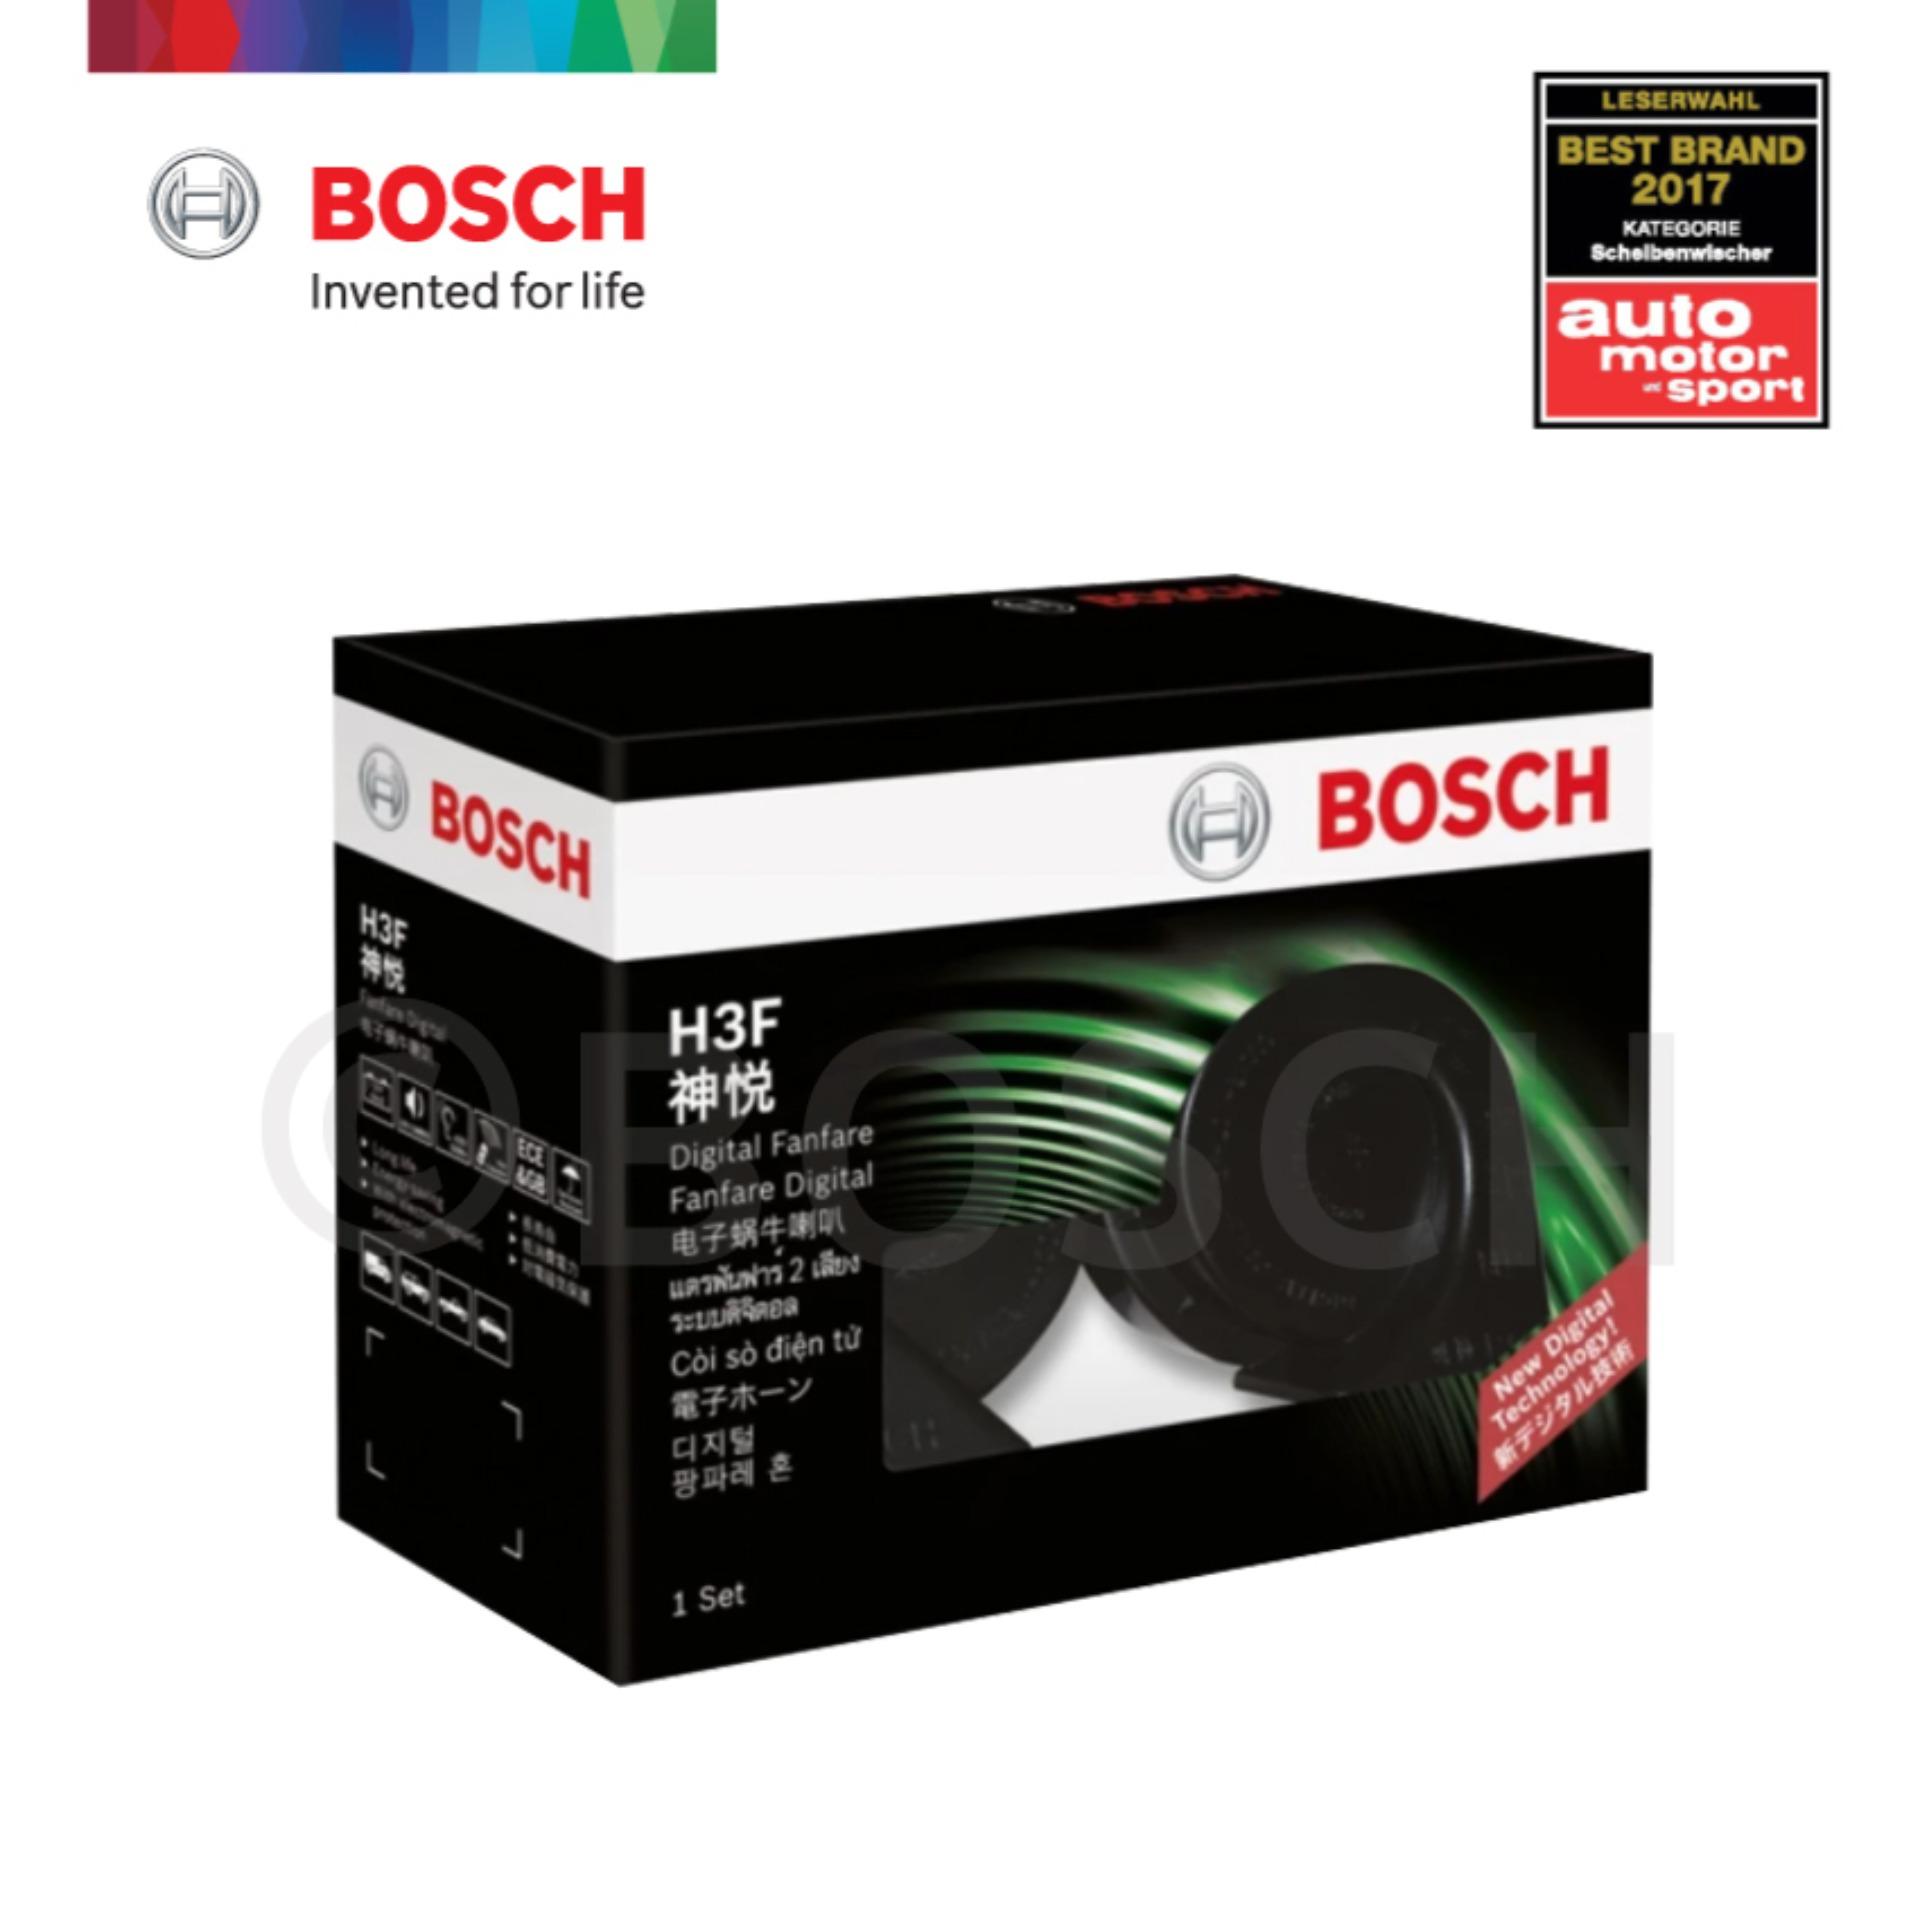 (มีตัวอย่างเสียง) Bosch แตรรถยนต์ ดิจิตอล บ๊อช H3F เสียงรถเบนซ์ เสียงทุ่ม นุ่ม ลึก ทนทานทุกการใช้งานไม่ต้องต่อรีเลย์